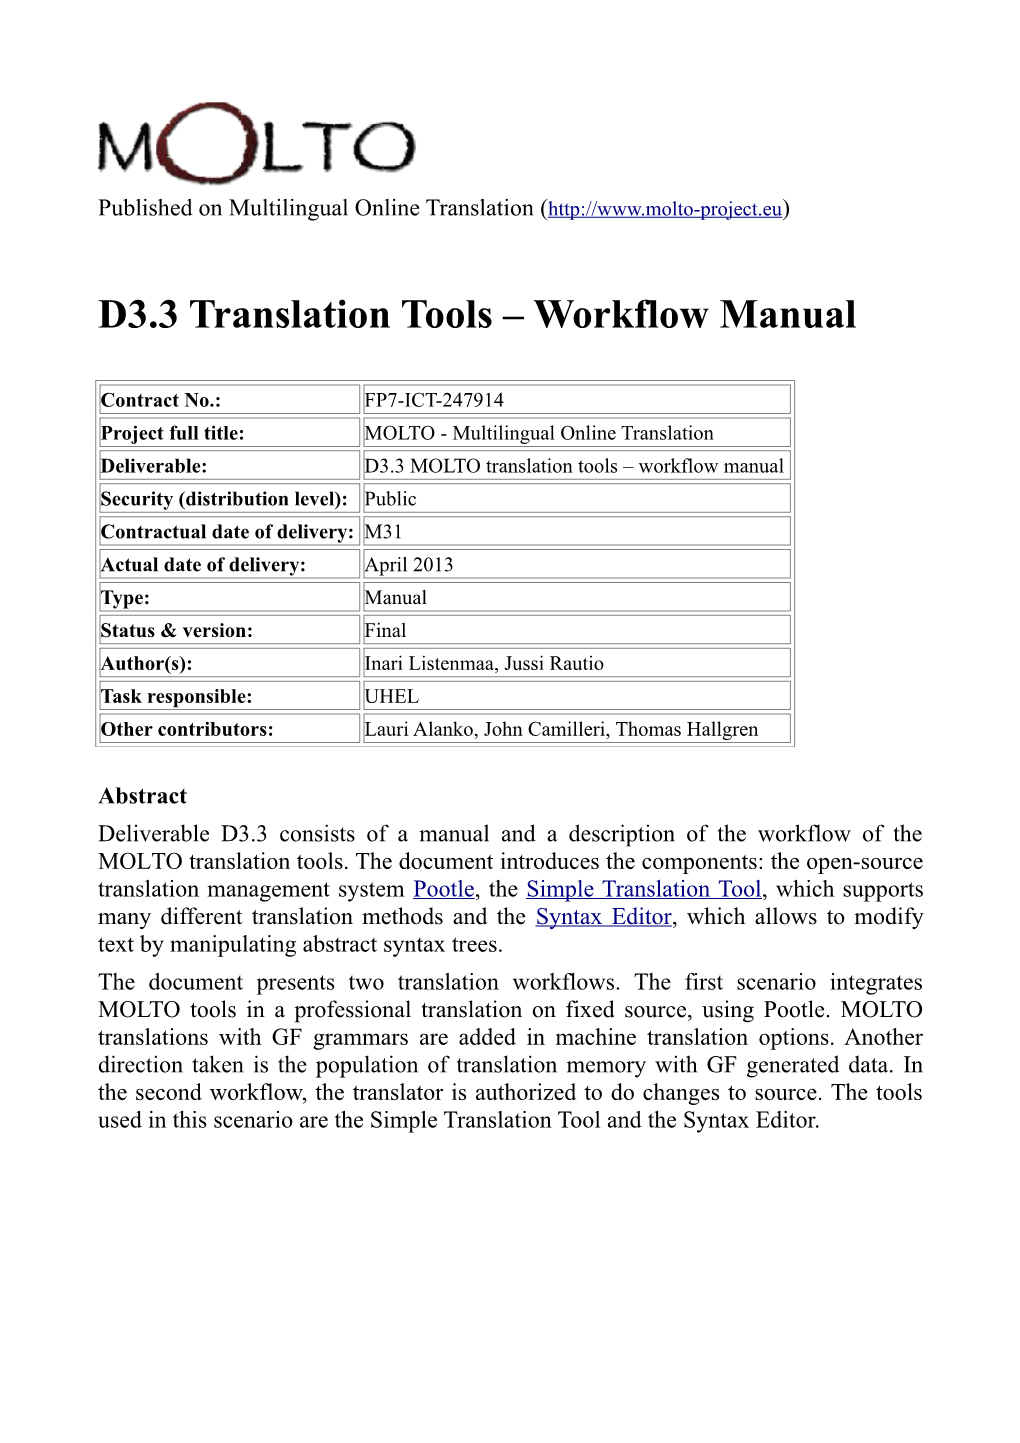 Workflow Manual